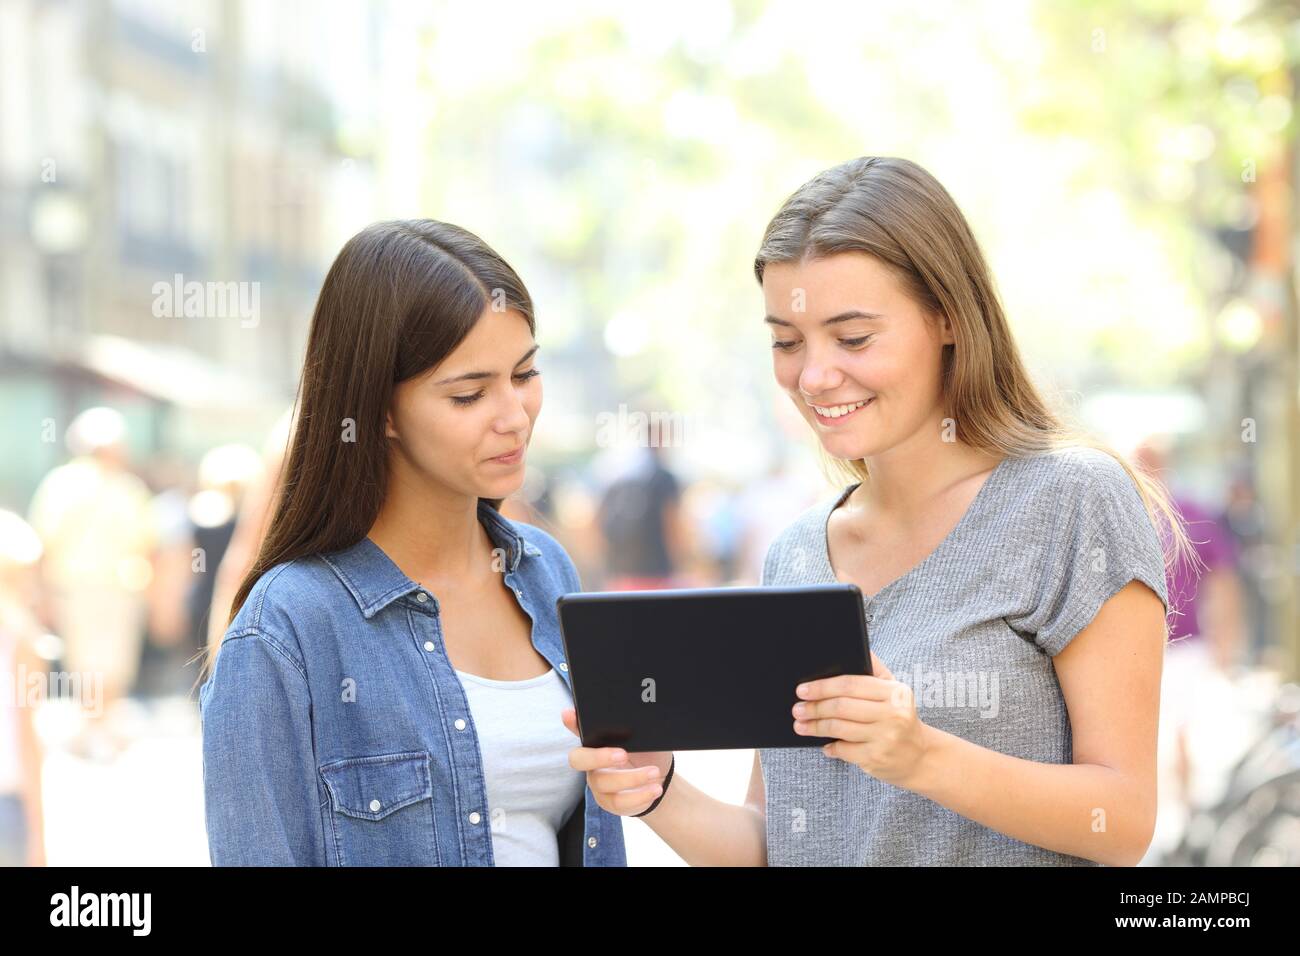 Deux amis regardant des contenus en ligne sur tablette dans la rue Banque D'Images